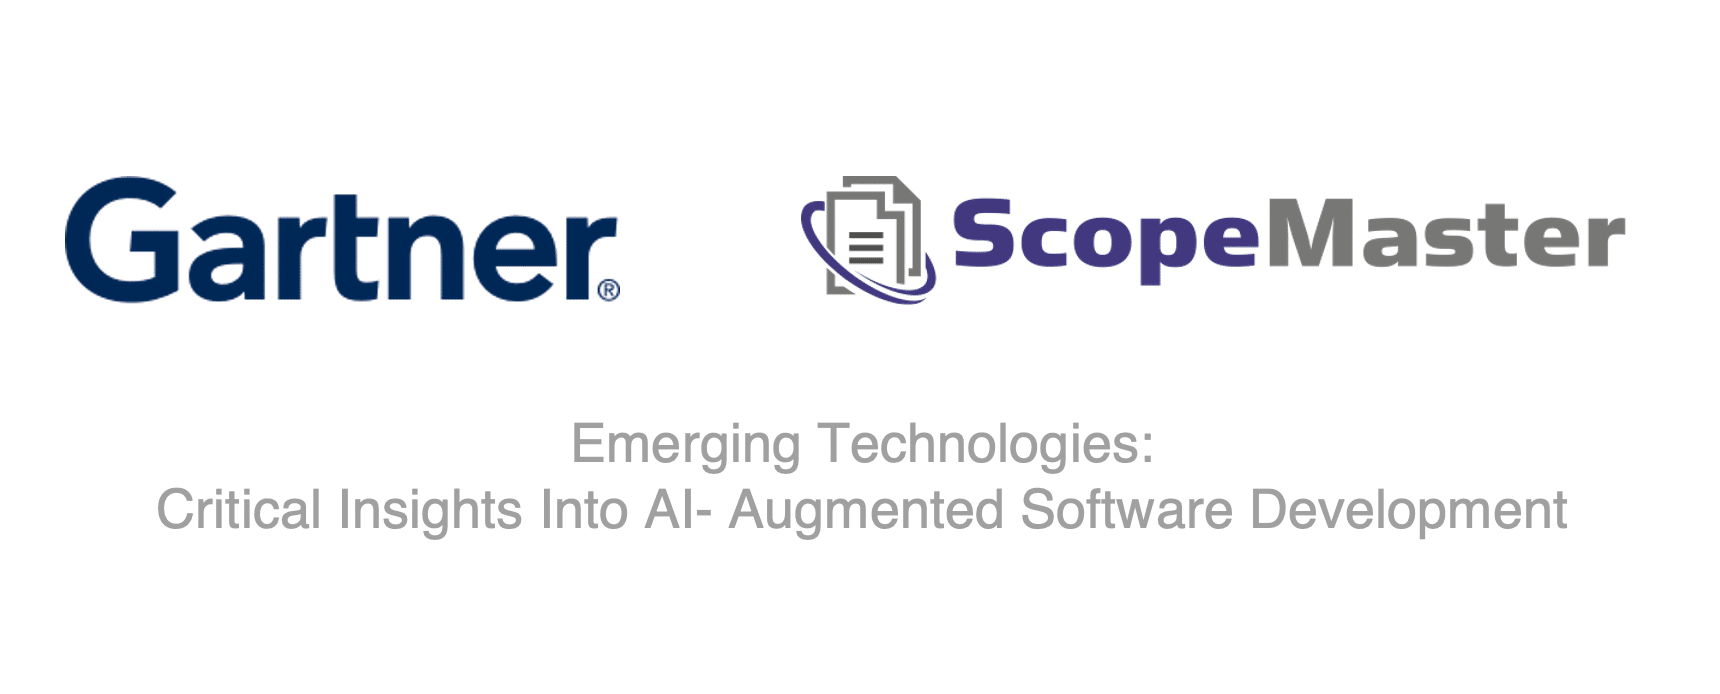 Gartner apresenta ScopeMaster no desenvolvimento de software aumentado por IA